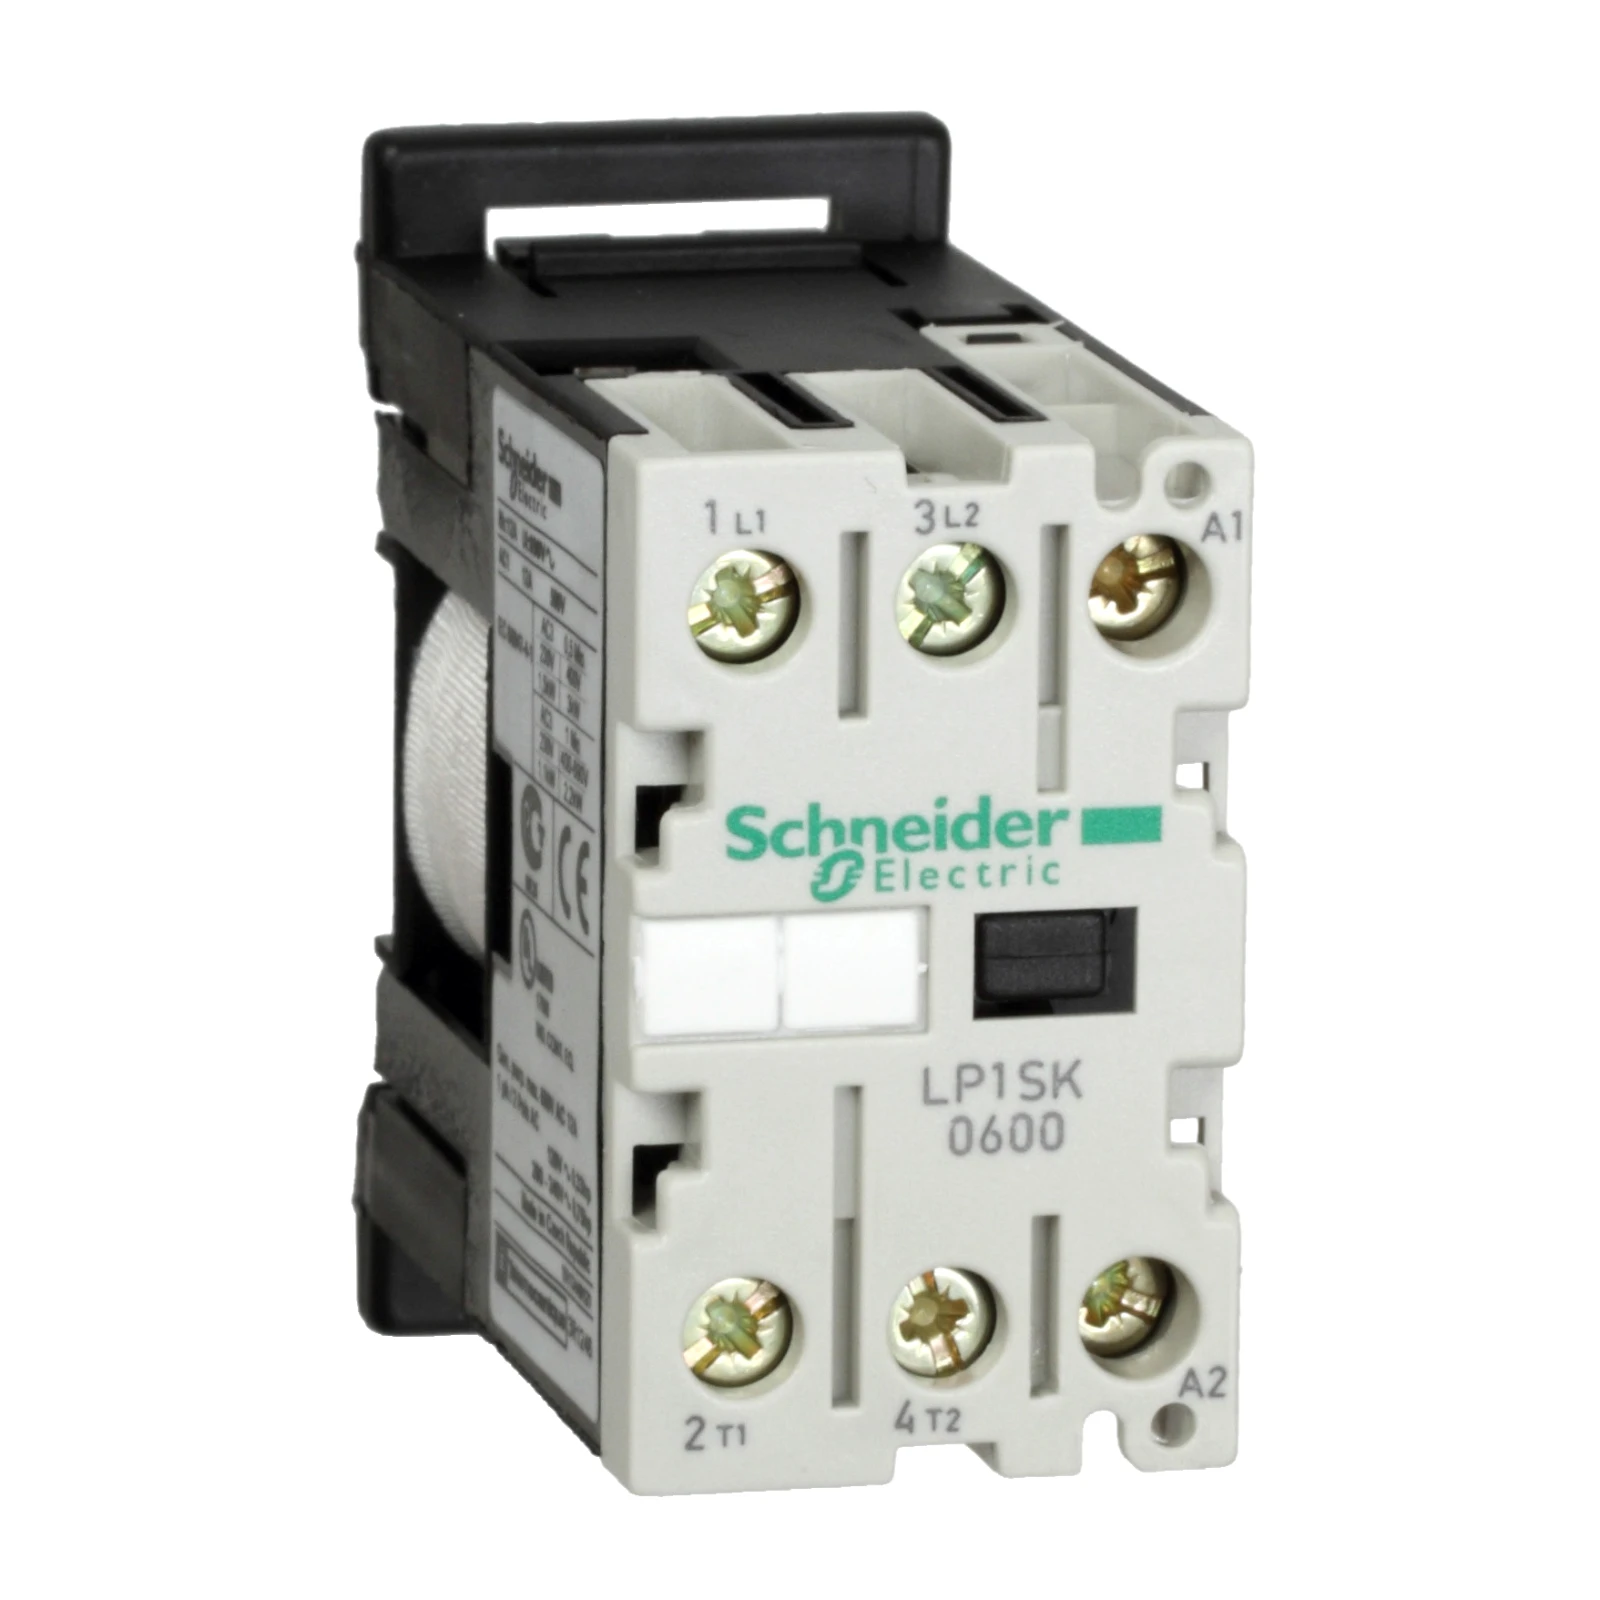 2339733 - Schneider Electric LP1SK0600JD